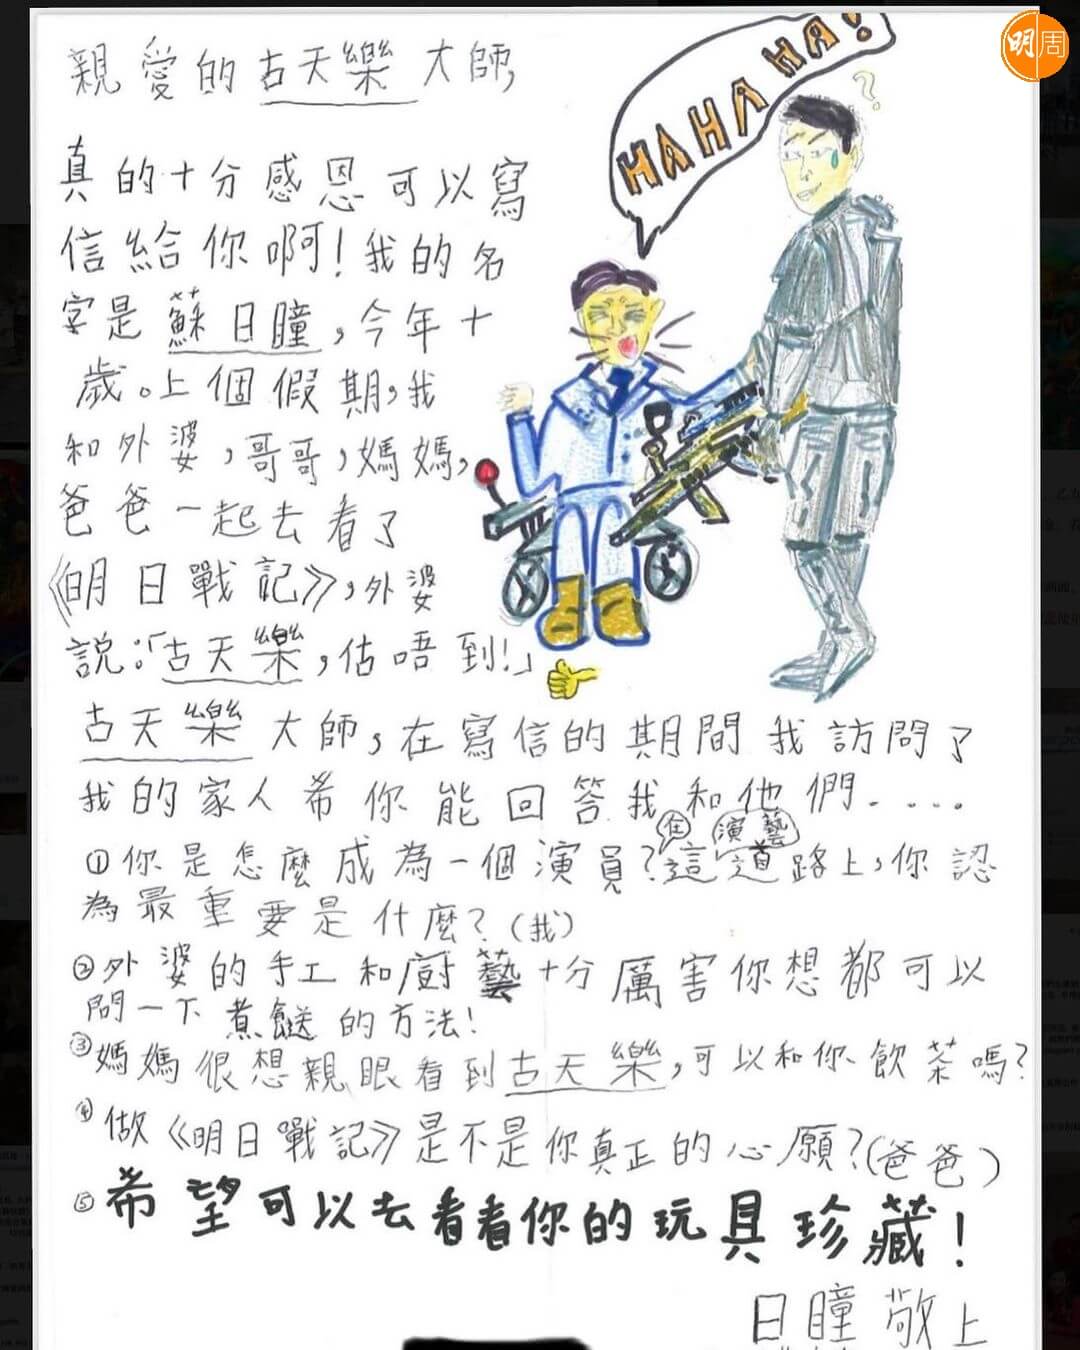 古天樂今日在社交網分享10歲小影迷給他的手寫信。